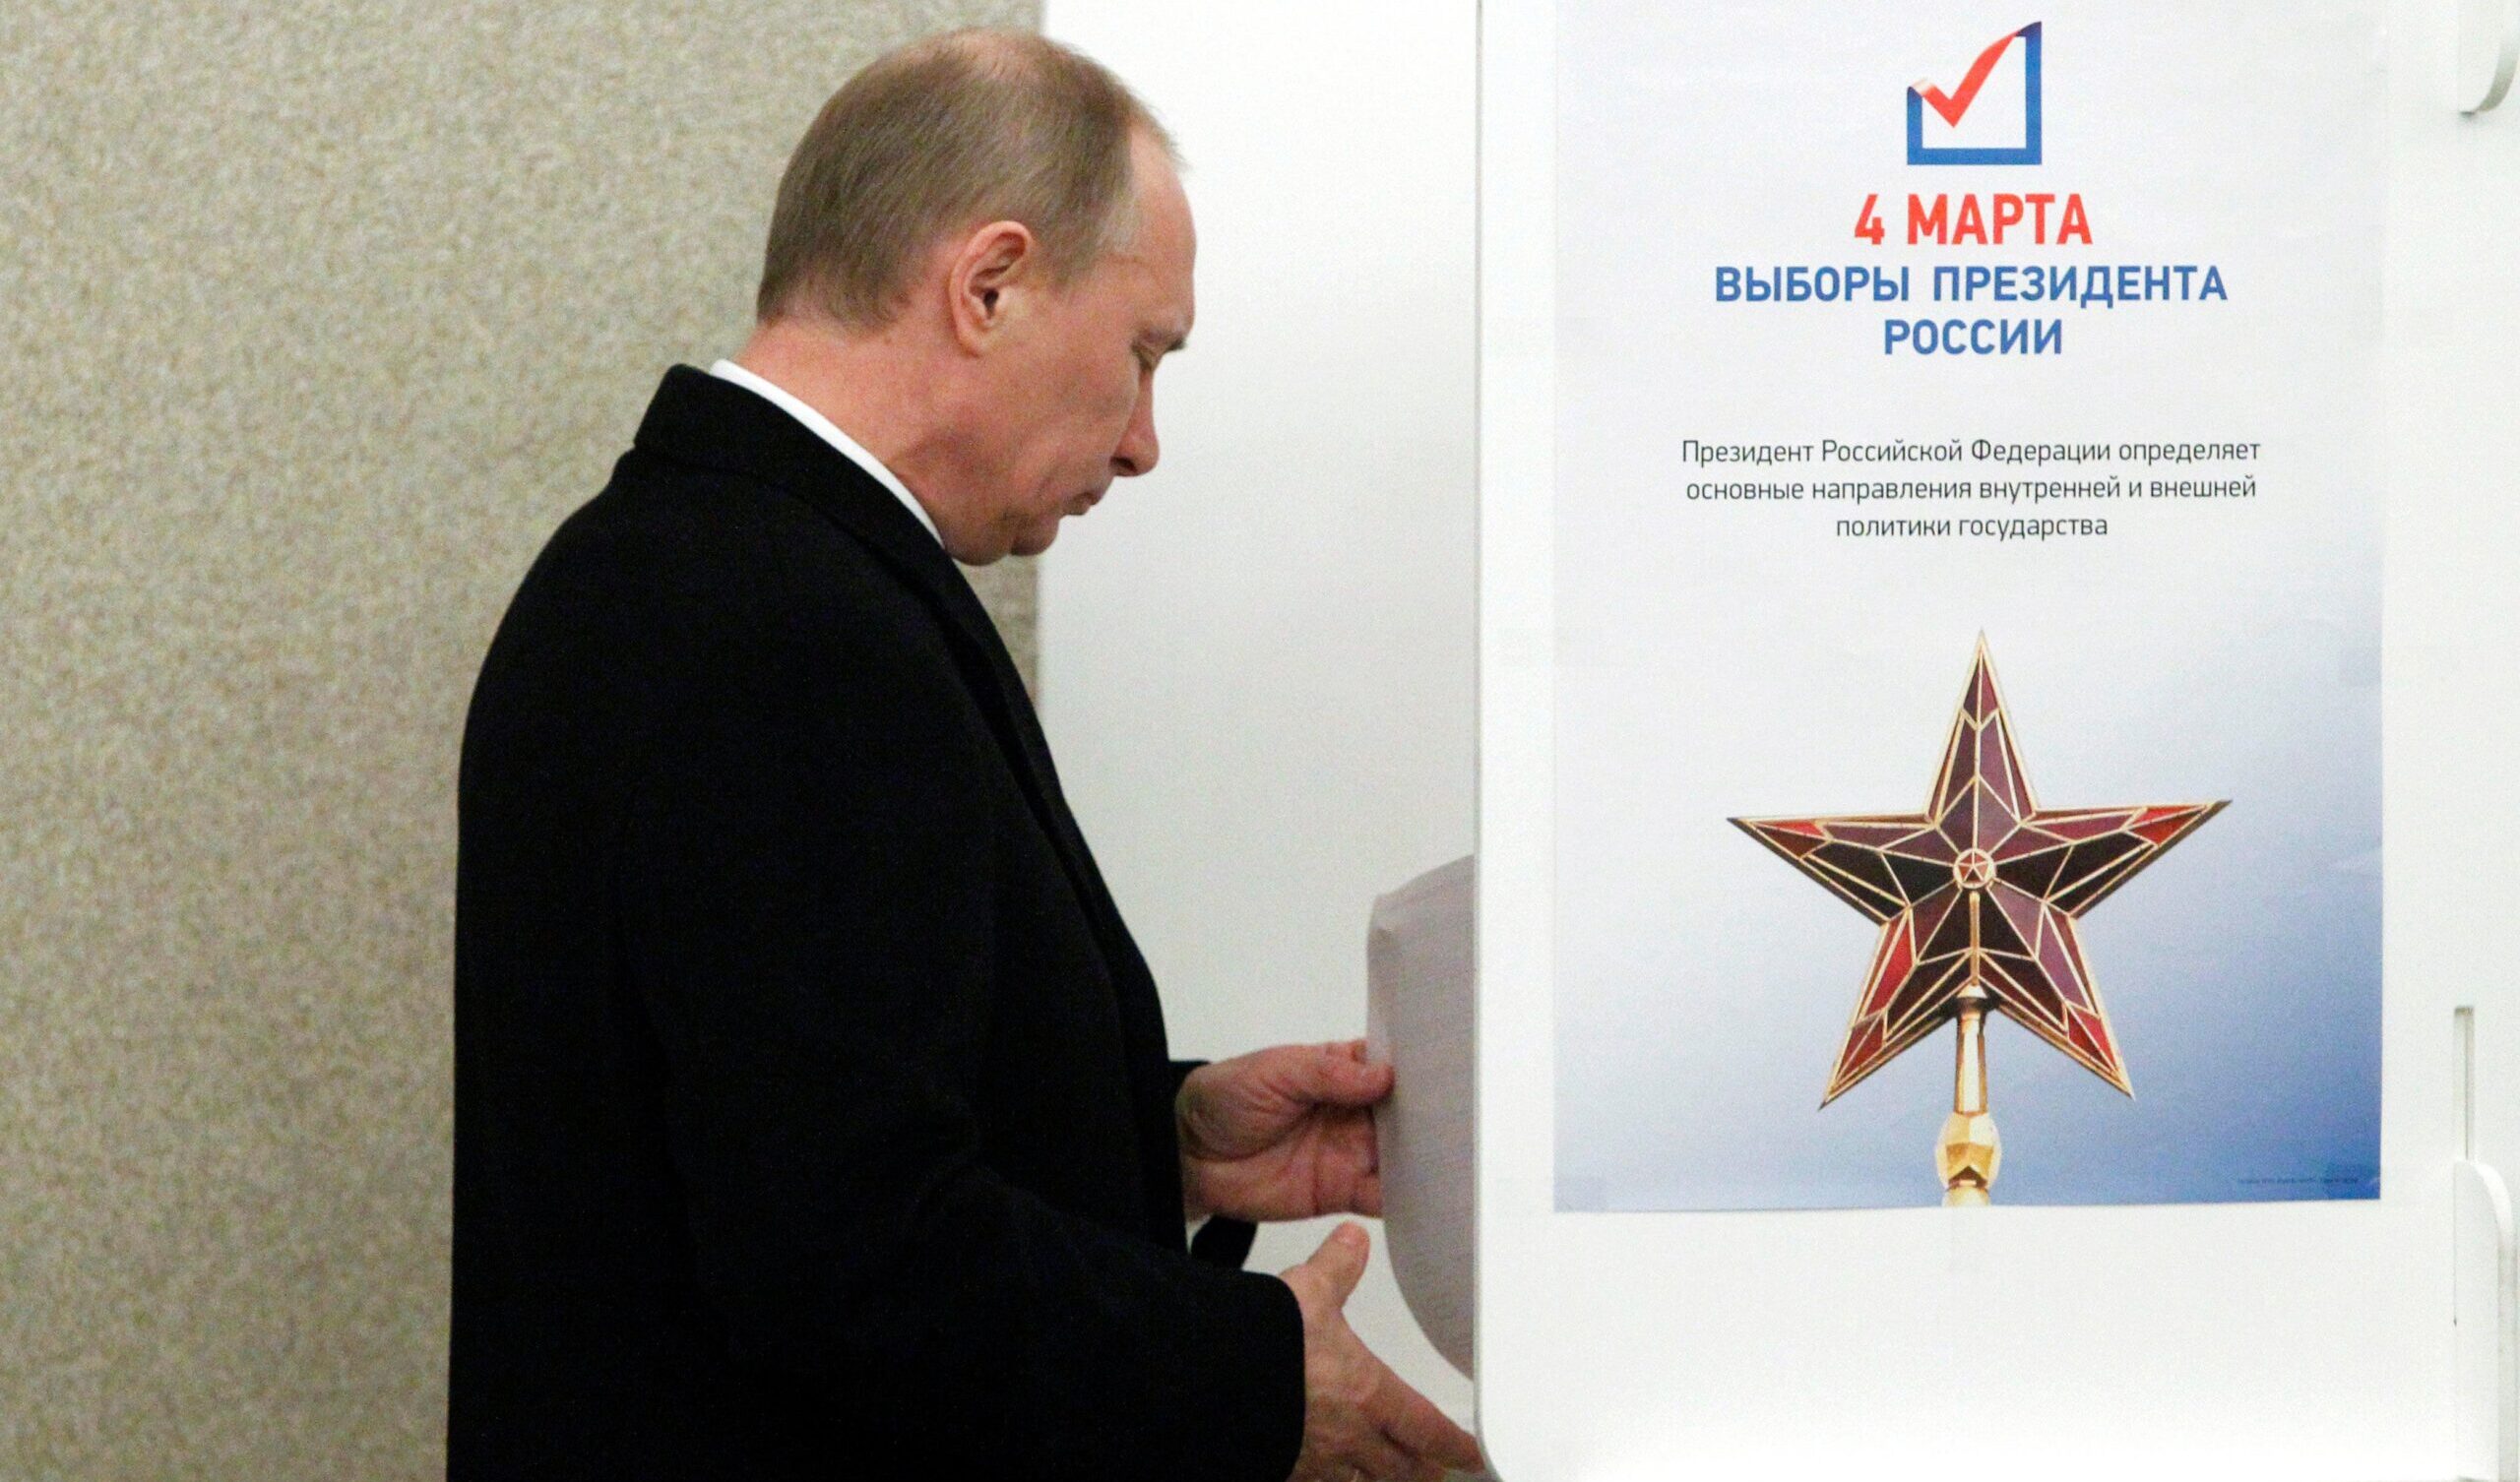 Putin vincerà le elezioni a mani basse: ma tra le mura del Cremlino ha capito che niente è come prima